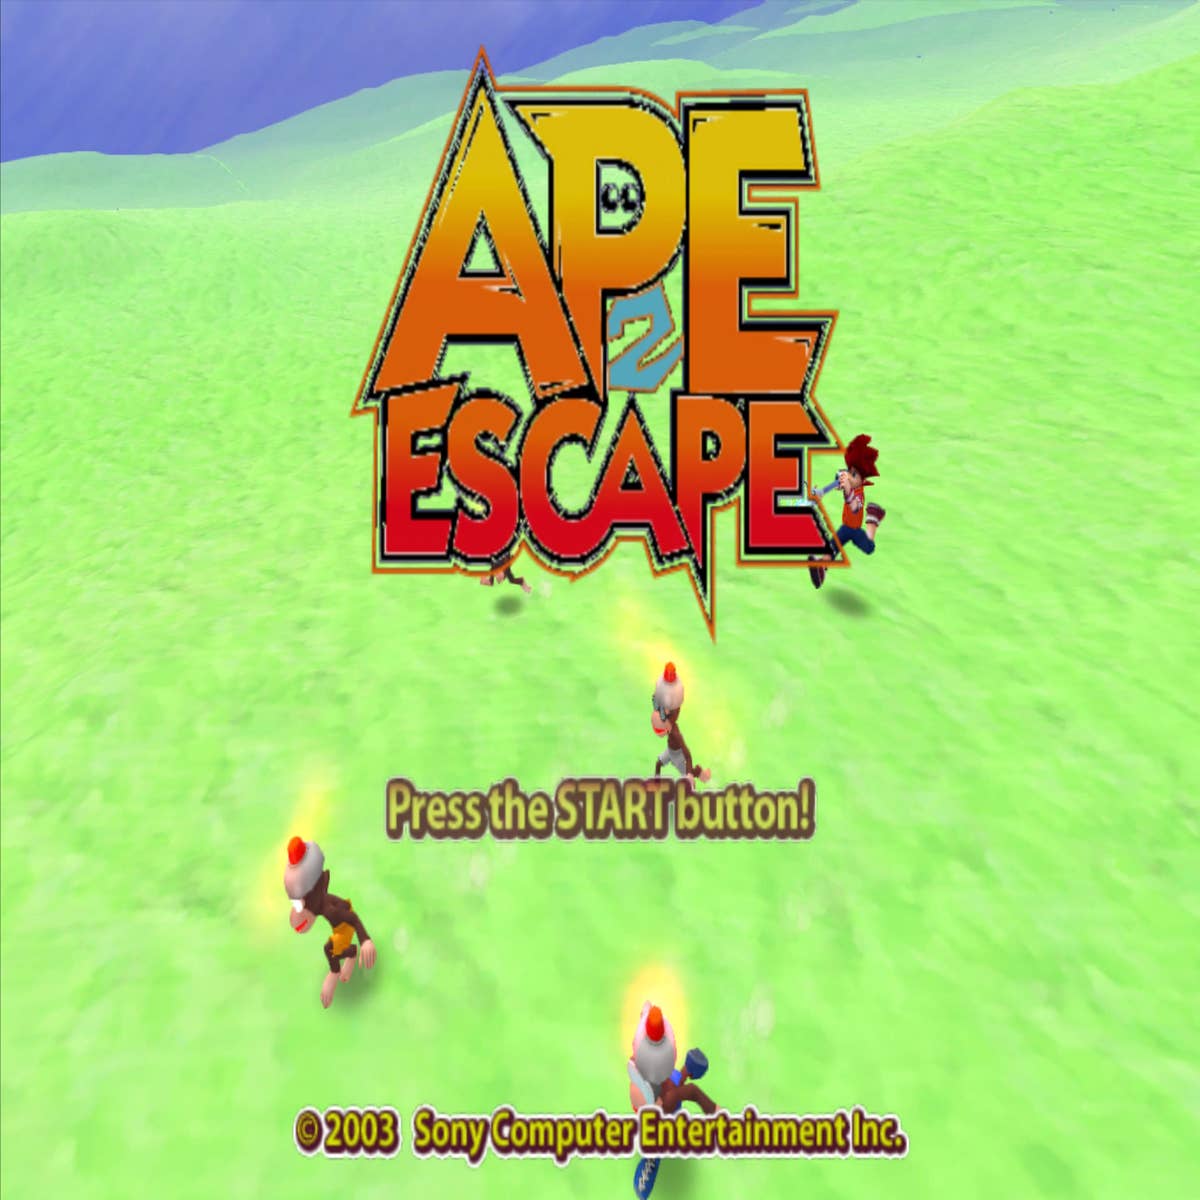 Ape Escape 2 chega à PS4, melhor que nunca